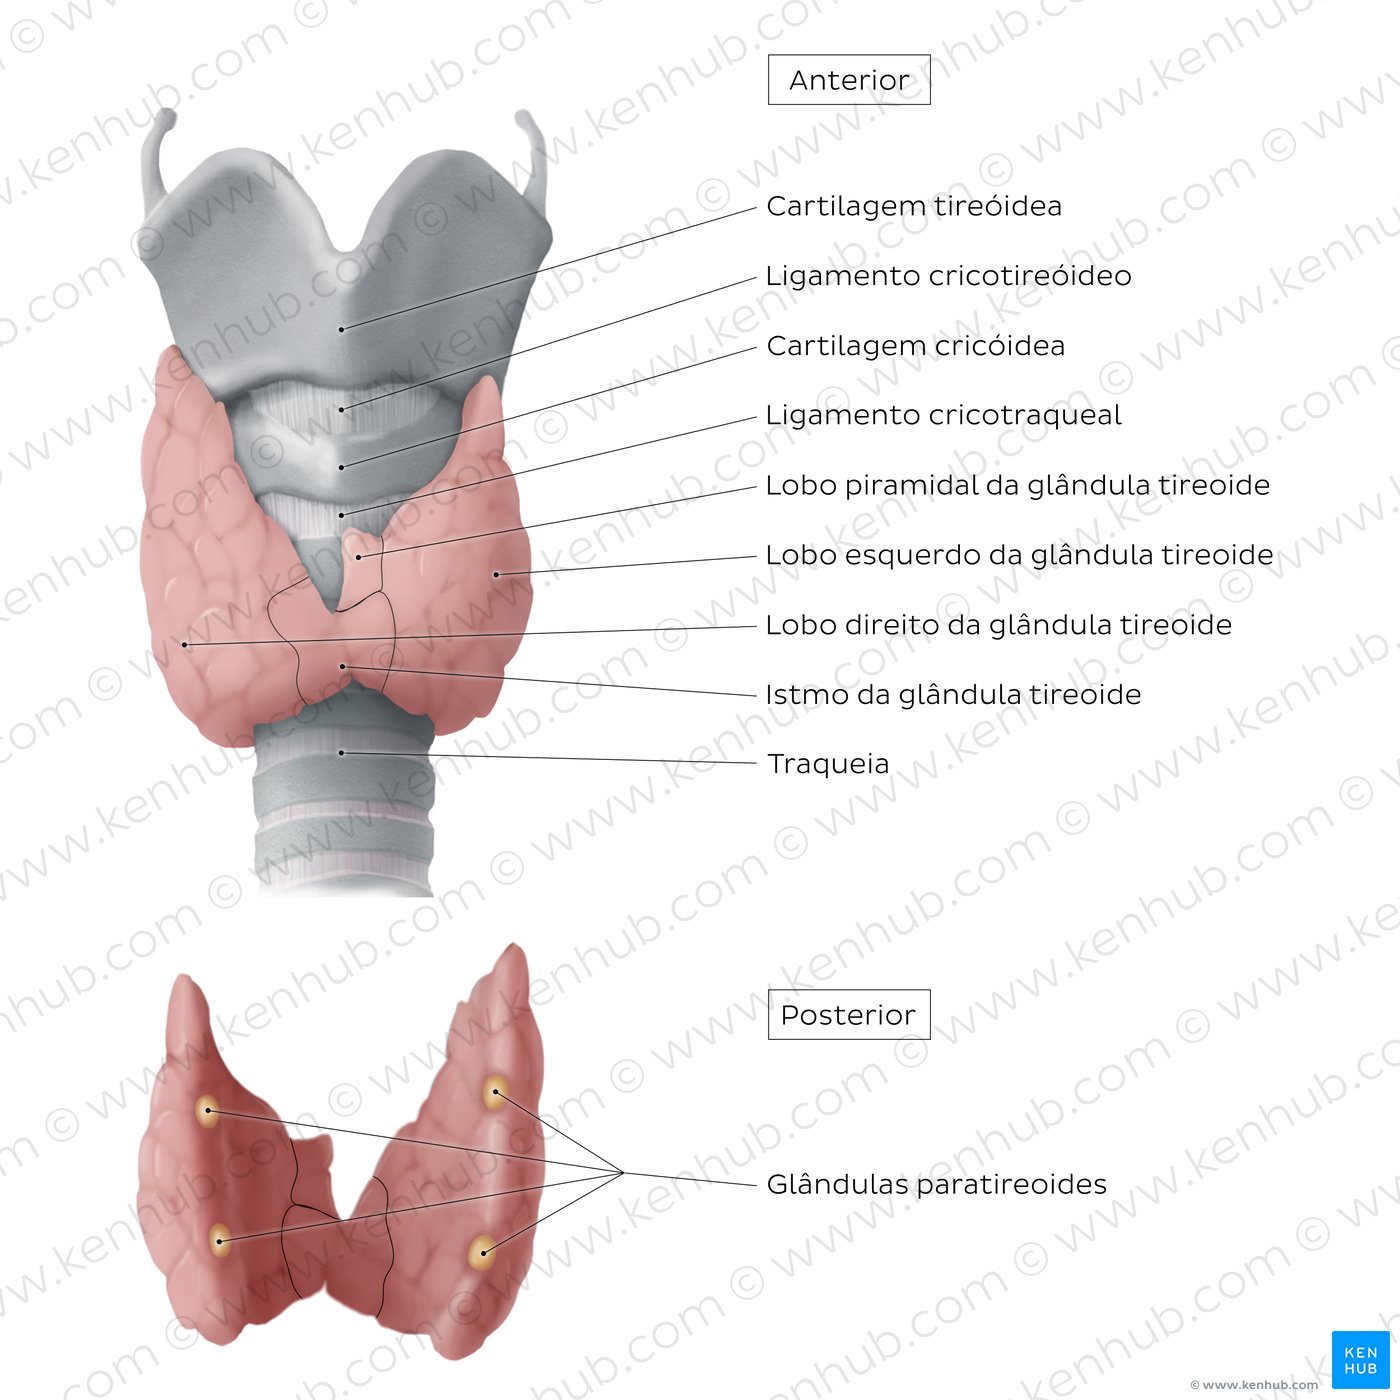 Anatomia da glândula tireoide